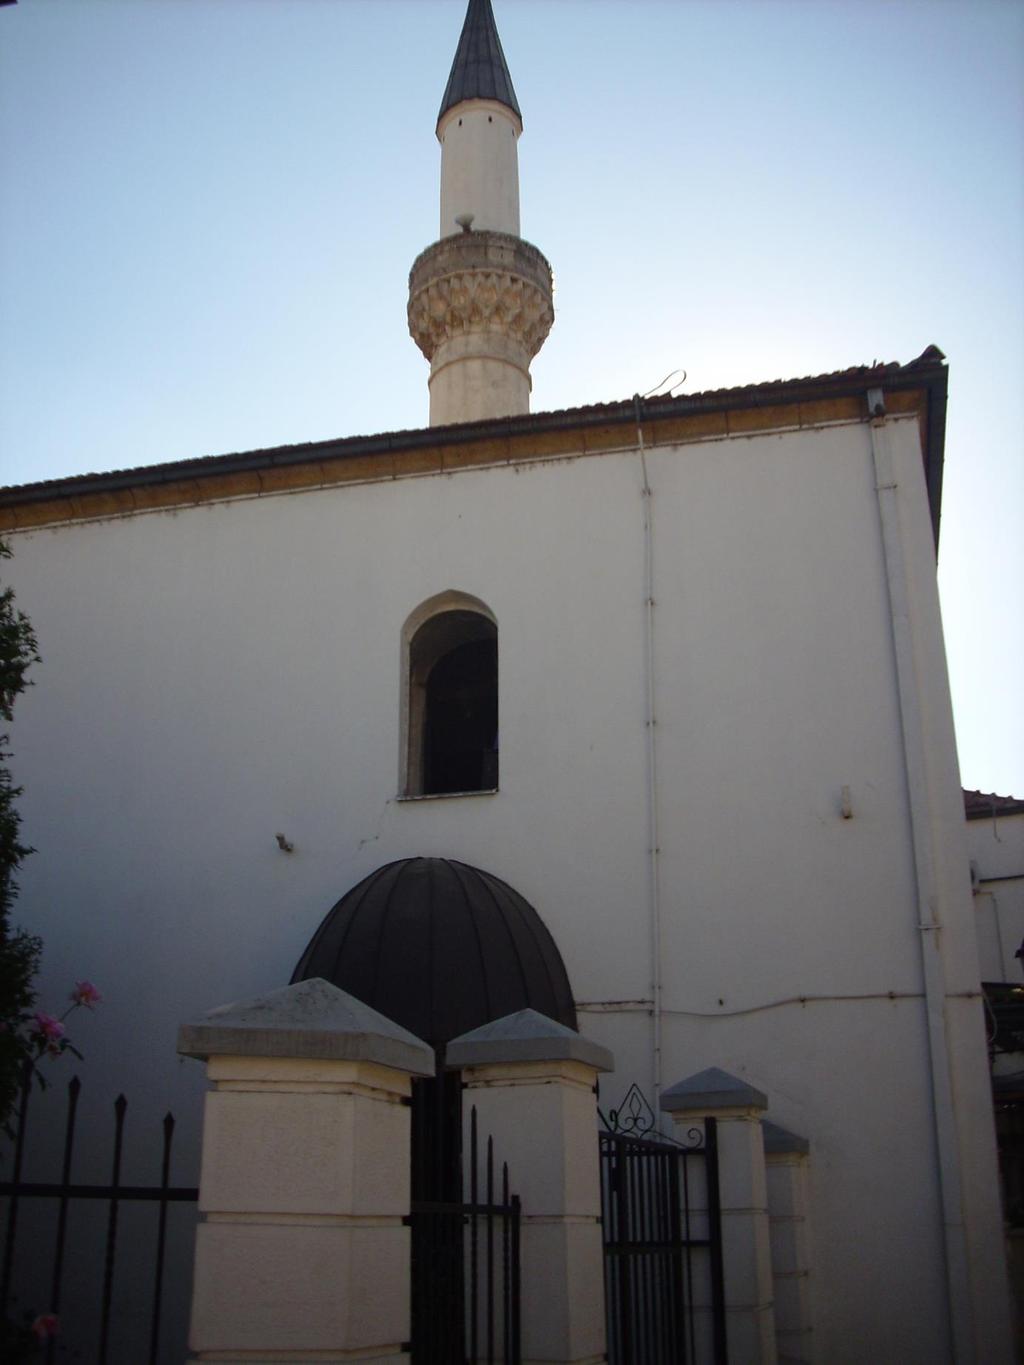 136 Resim 3.6. Murad PaĢa Cami (Ekim 2012) Murad PaĢa Camii, Ġbn ġahin Mahallesi nde bulunmaktadır.